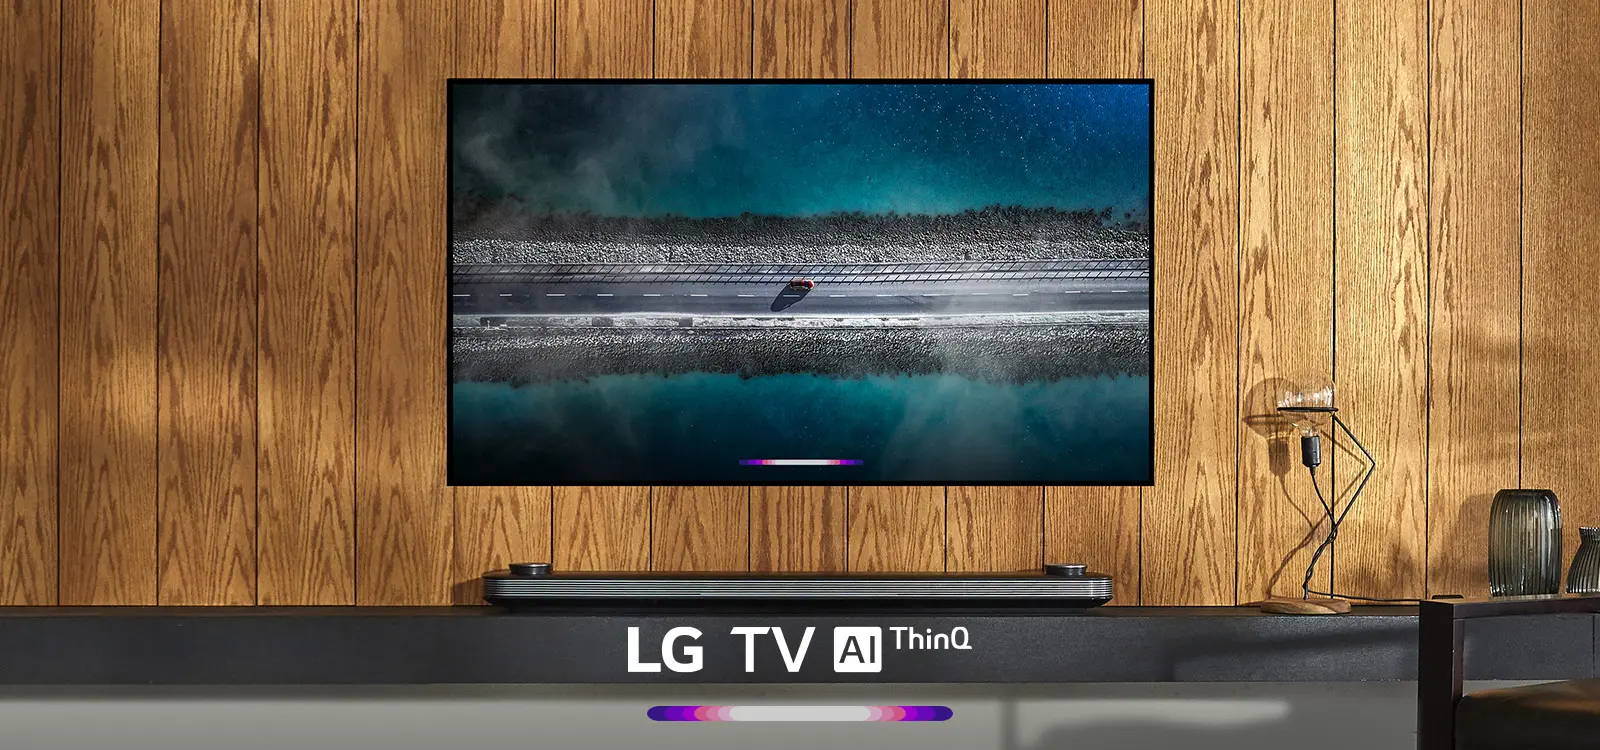 Estos son los televisores LG de 2018 compatibles con AirPlay 2 y HomeKit